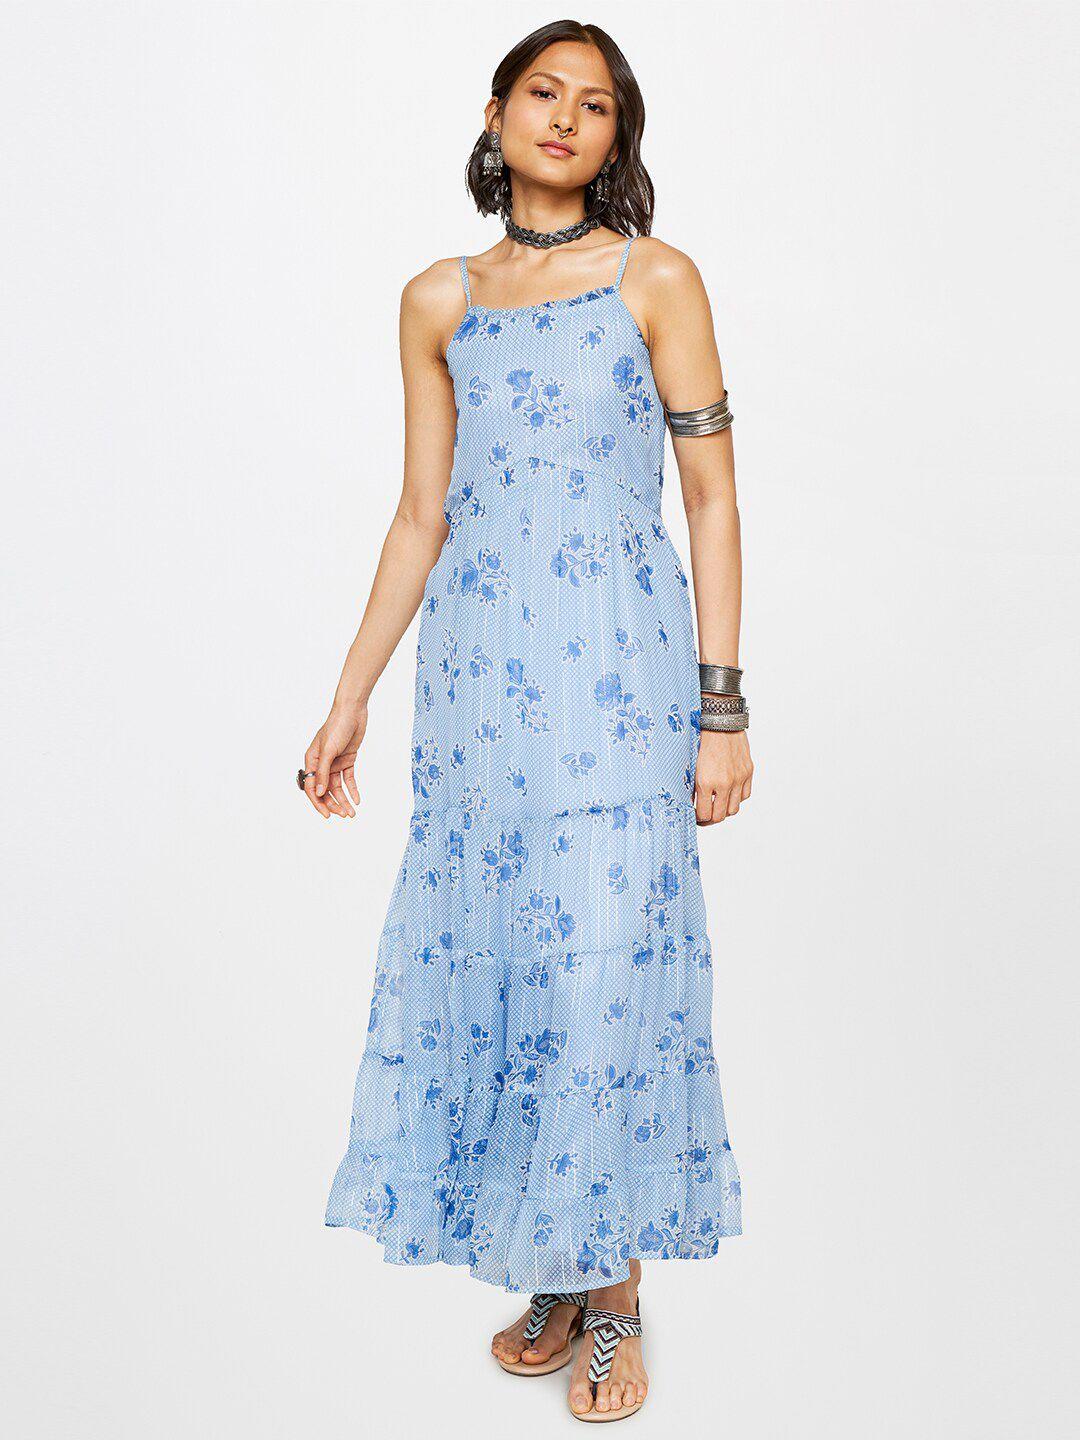 global desi floral printed shoulder straps tiered maxi dress